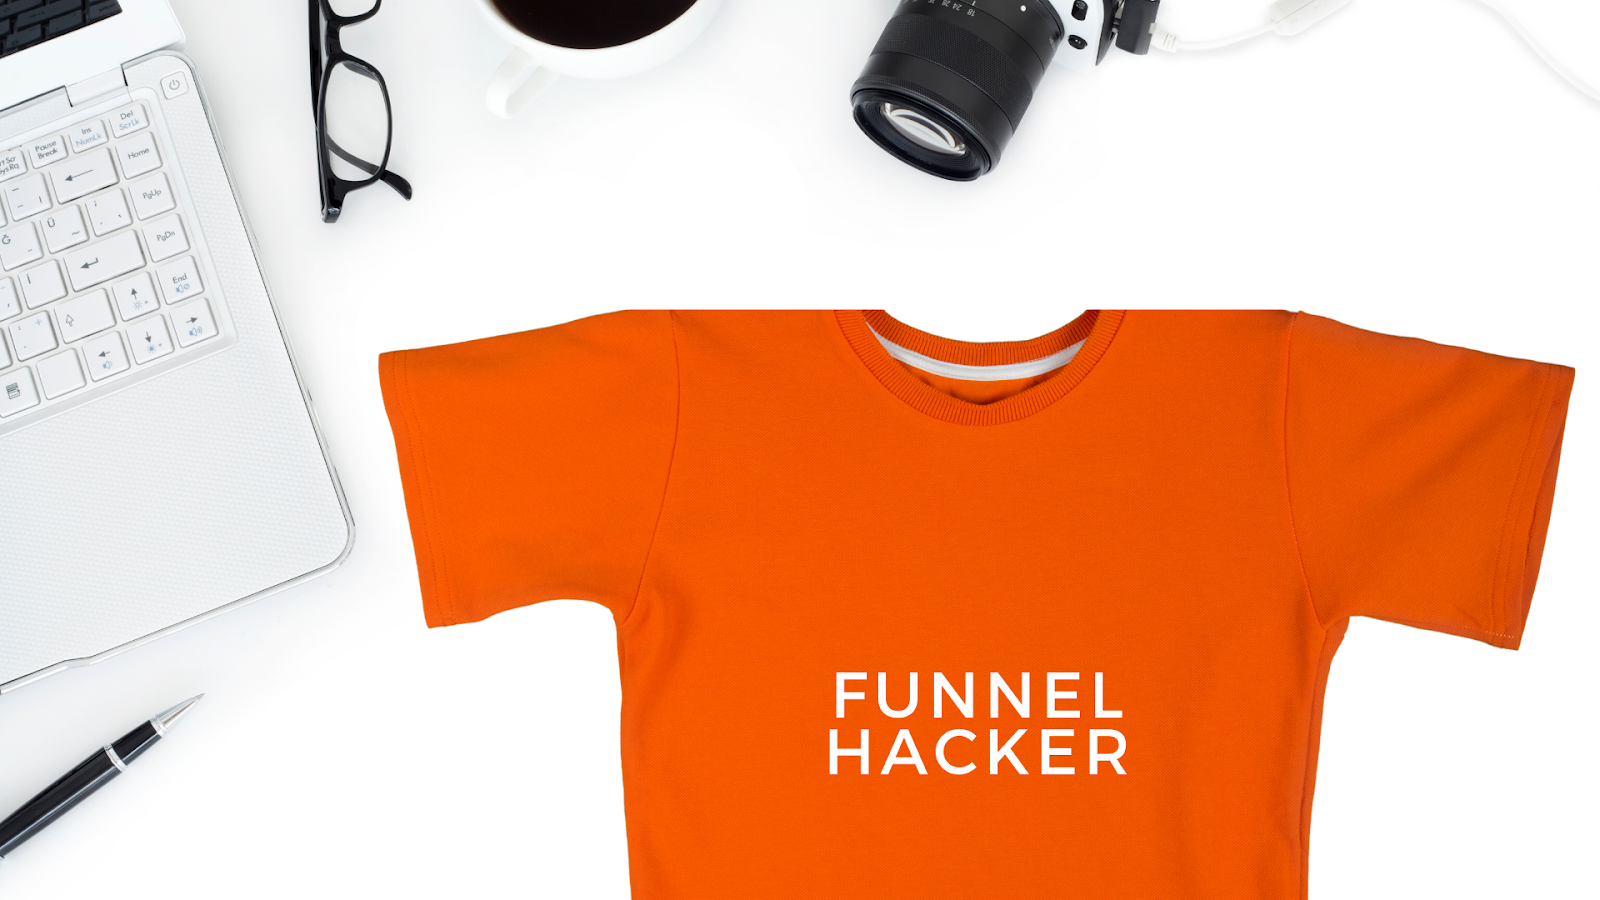 Funnel hacking secrets | Funnel hacker shirt